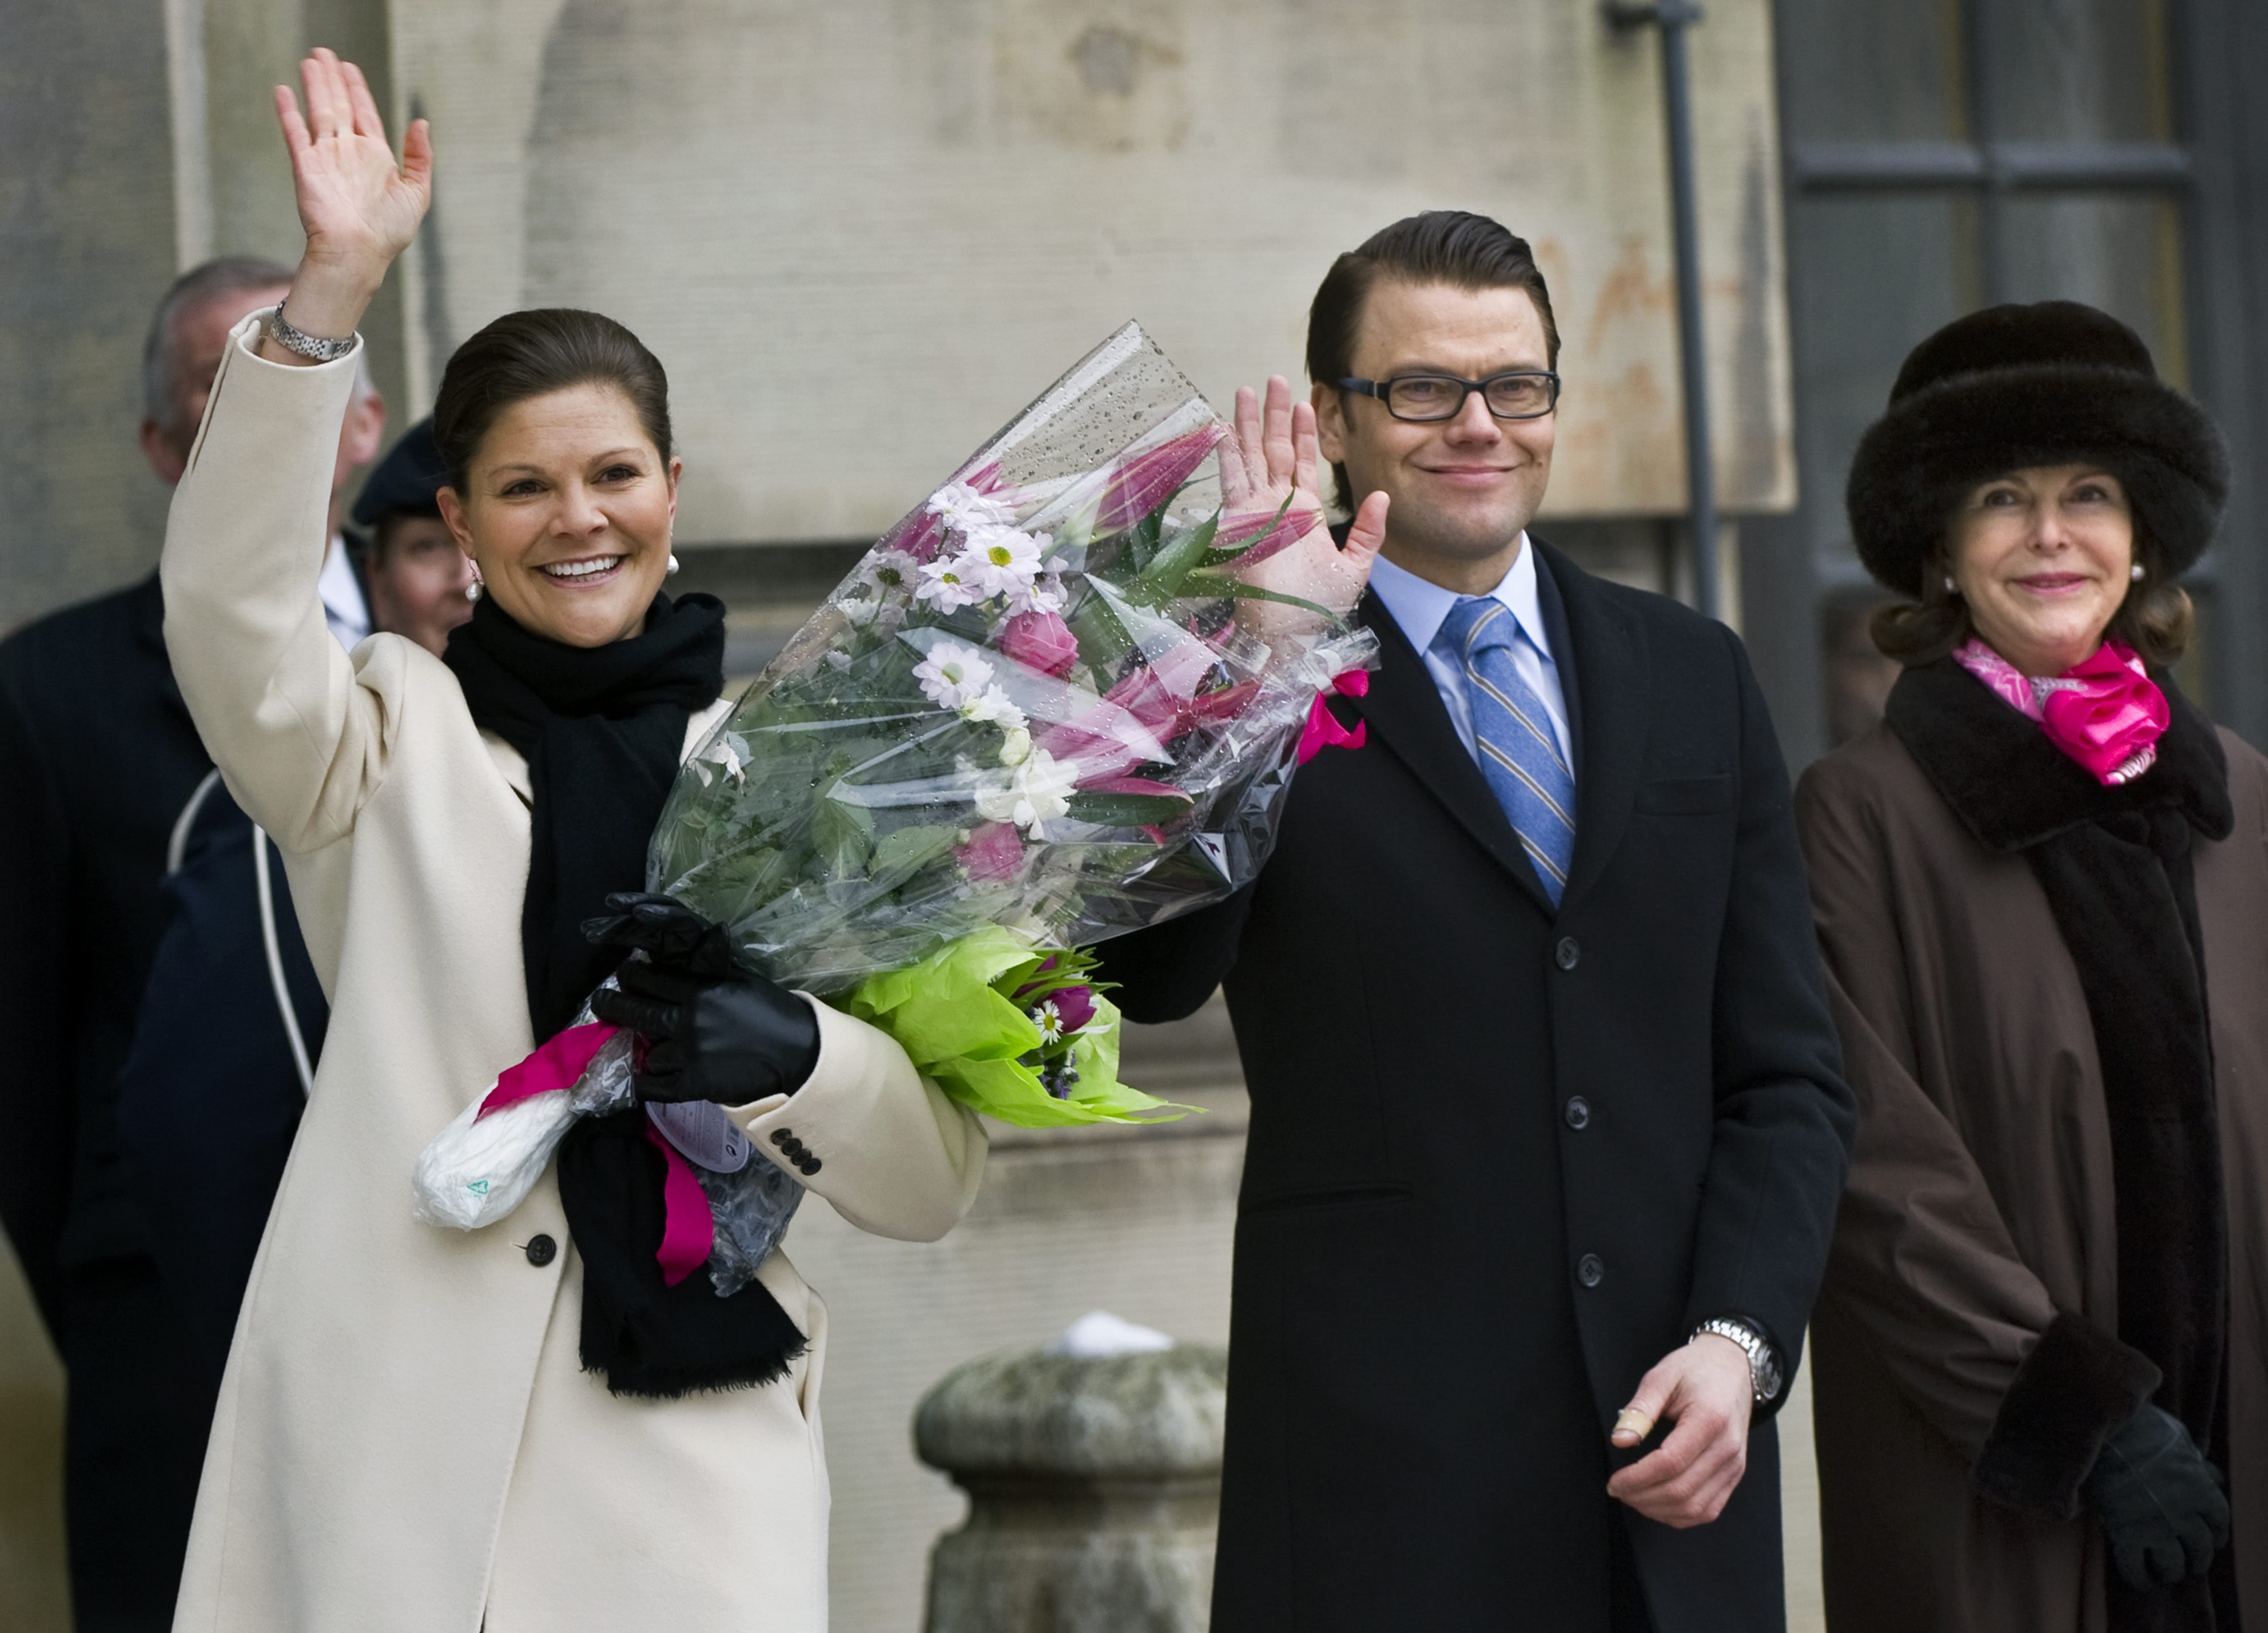 Monarki, Riksdagsvalet 2010, Gudrun Schyman, Prins Daniel, President, Feministiskt initiativ, kronprinsessan Victoria, Republik, Kungligt, Kungliga bröllop